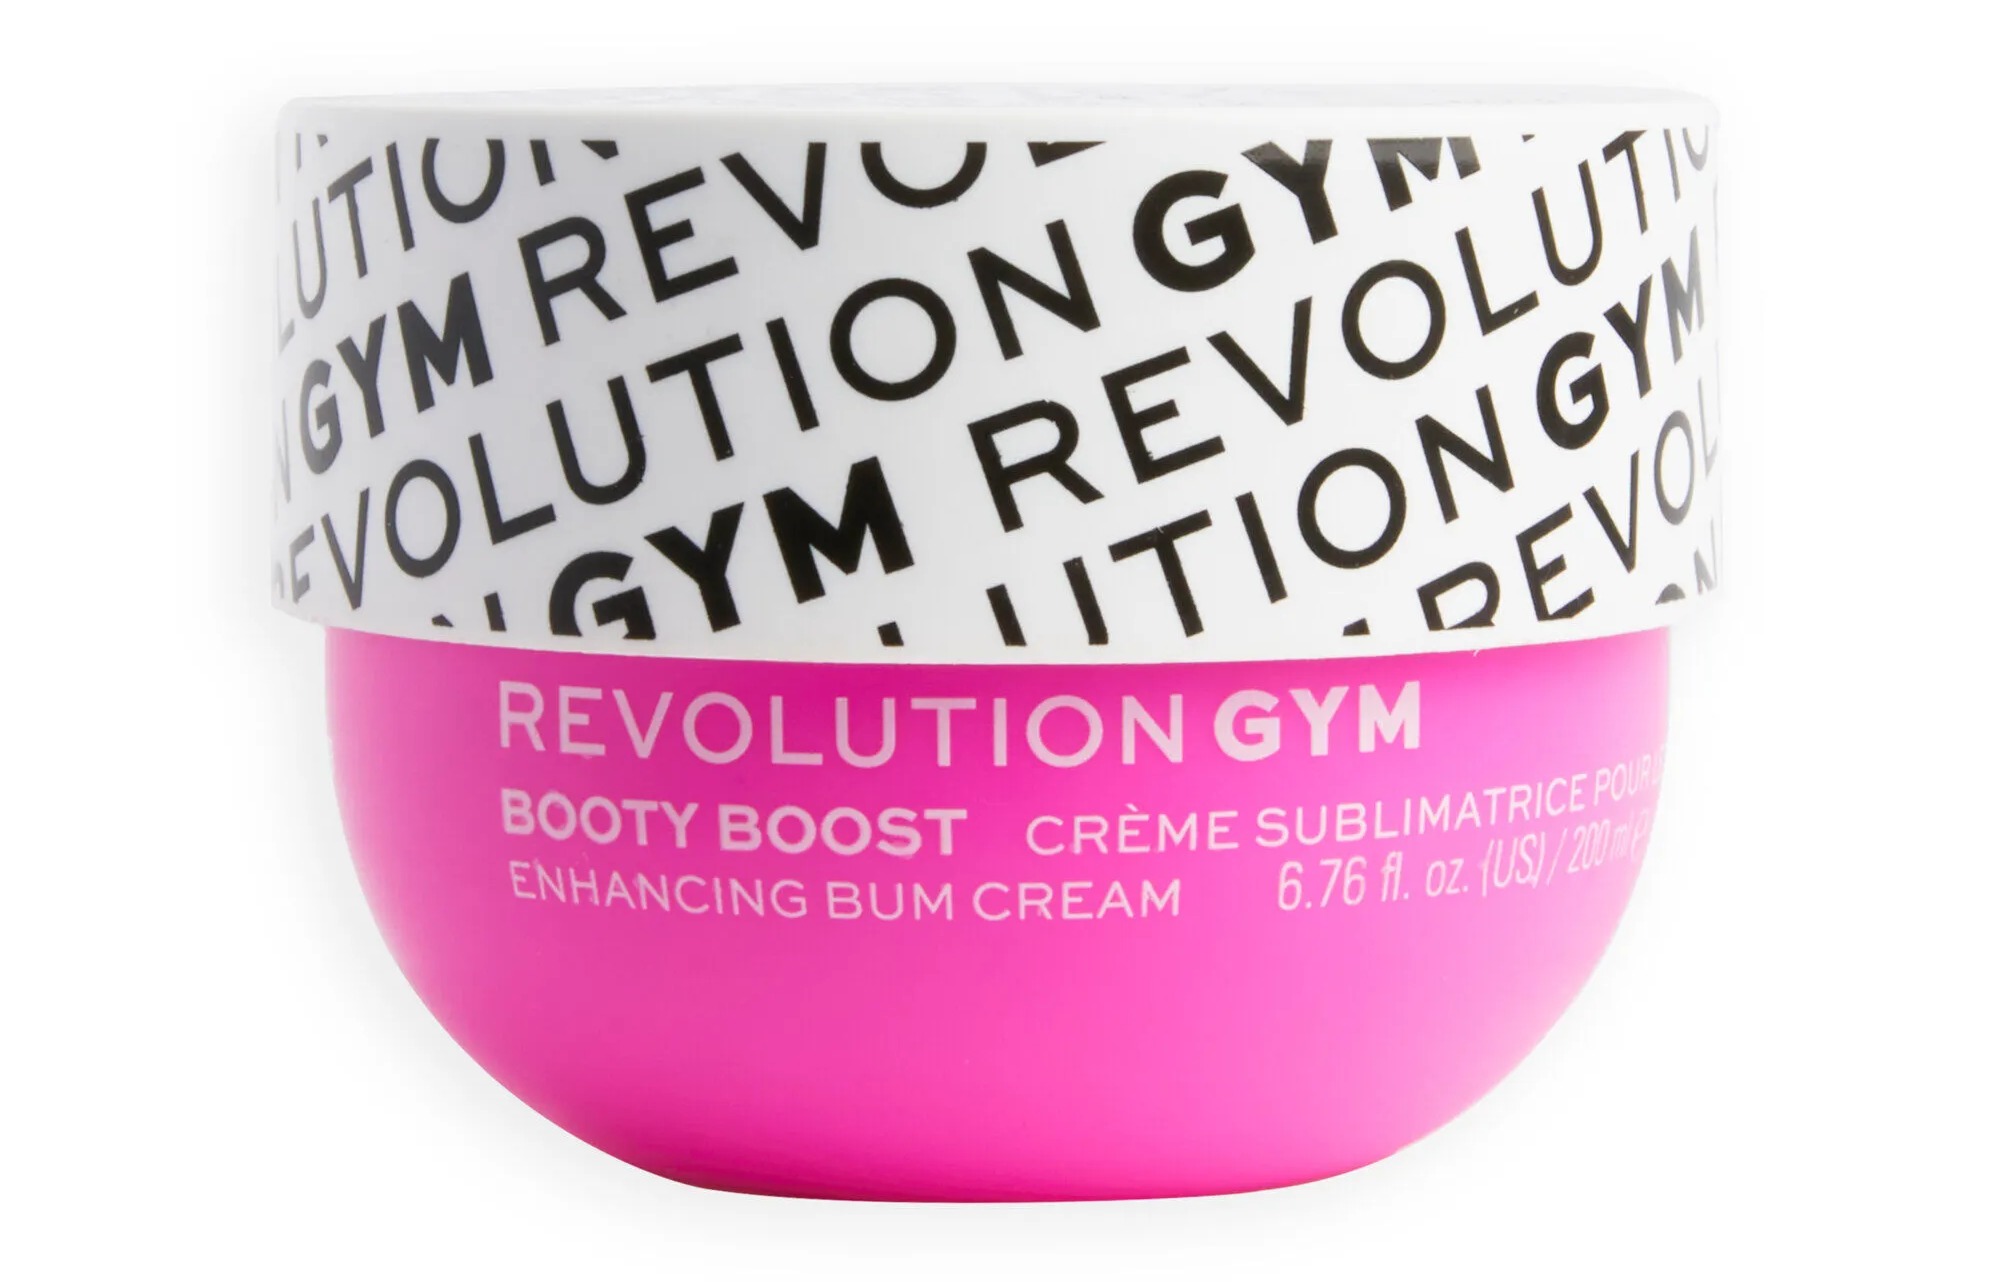 Aber die Booty Boost Cream von Revolution kostet bei RevolutionBeauty.com nur 5 £